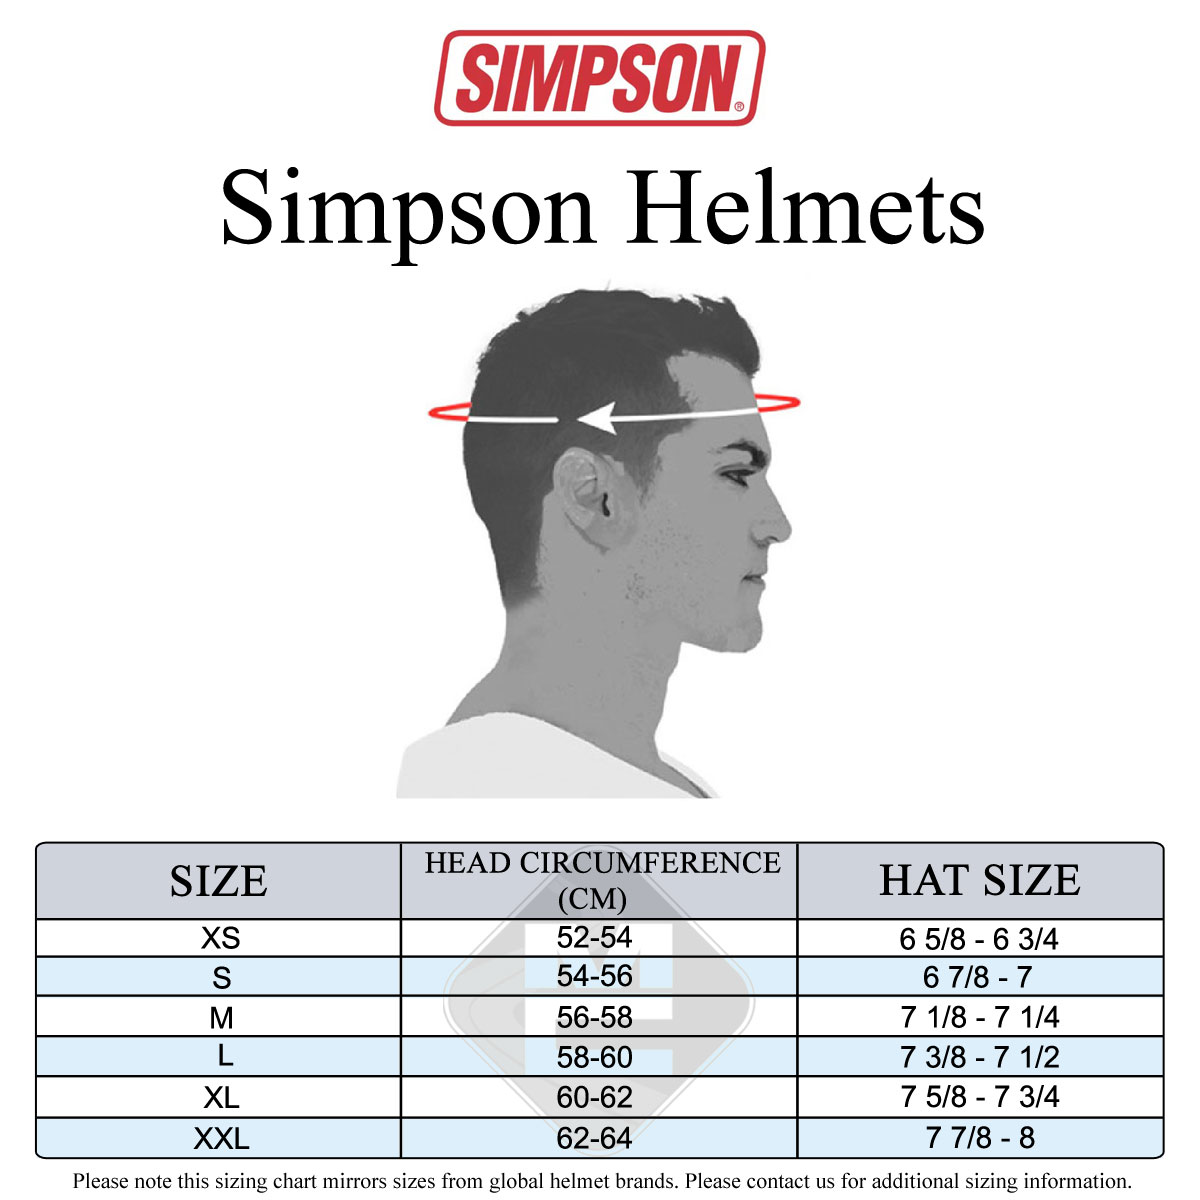 Simpson Men's Size Guide